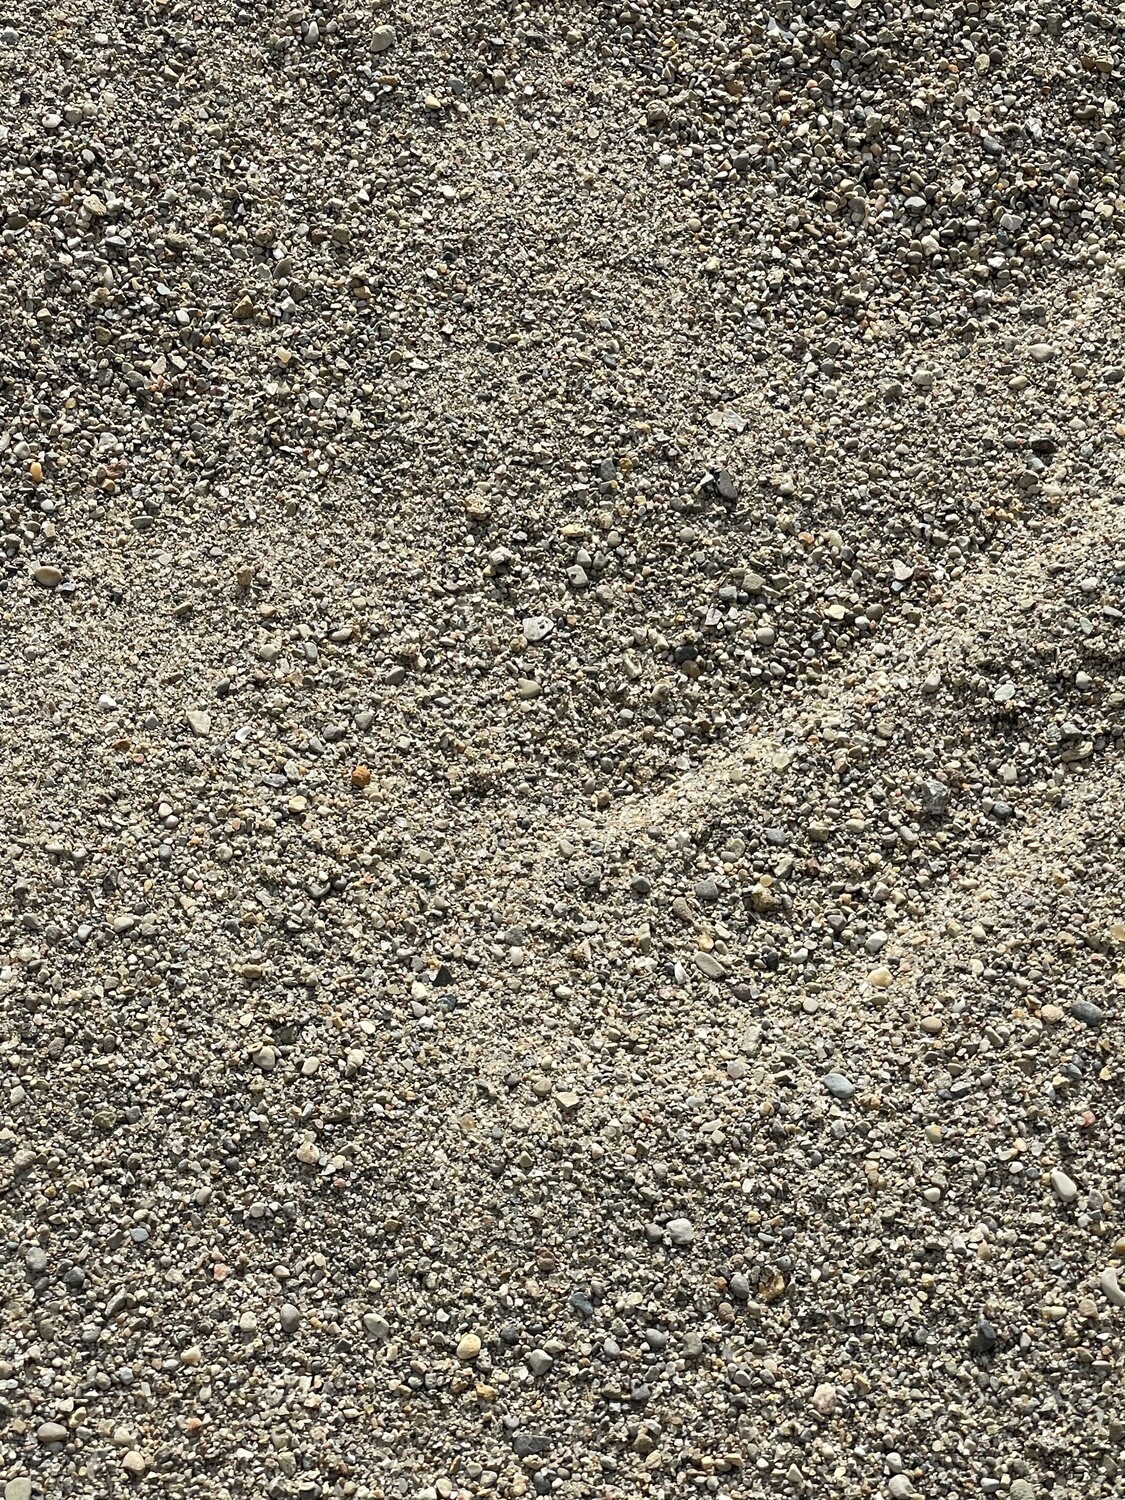 Coarse Sand (per cubic yard)